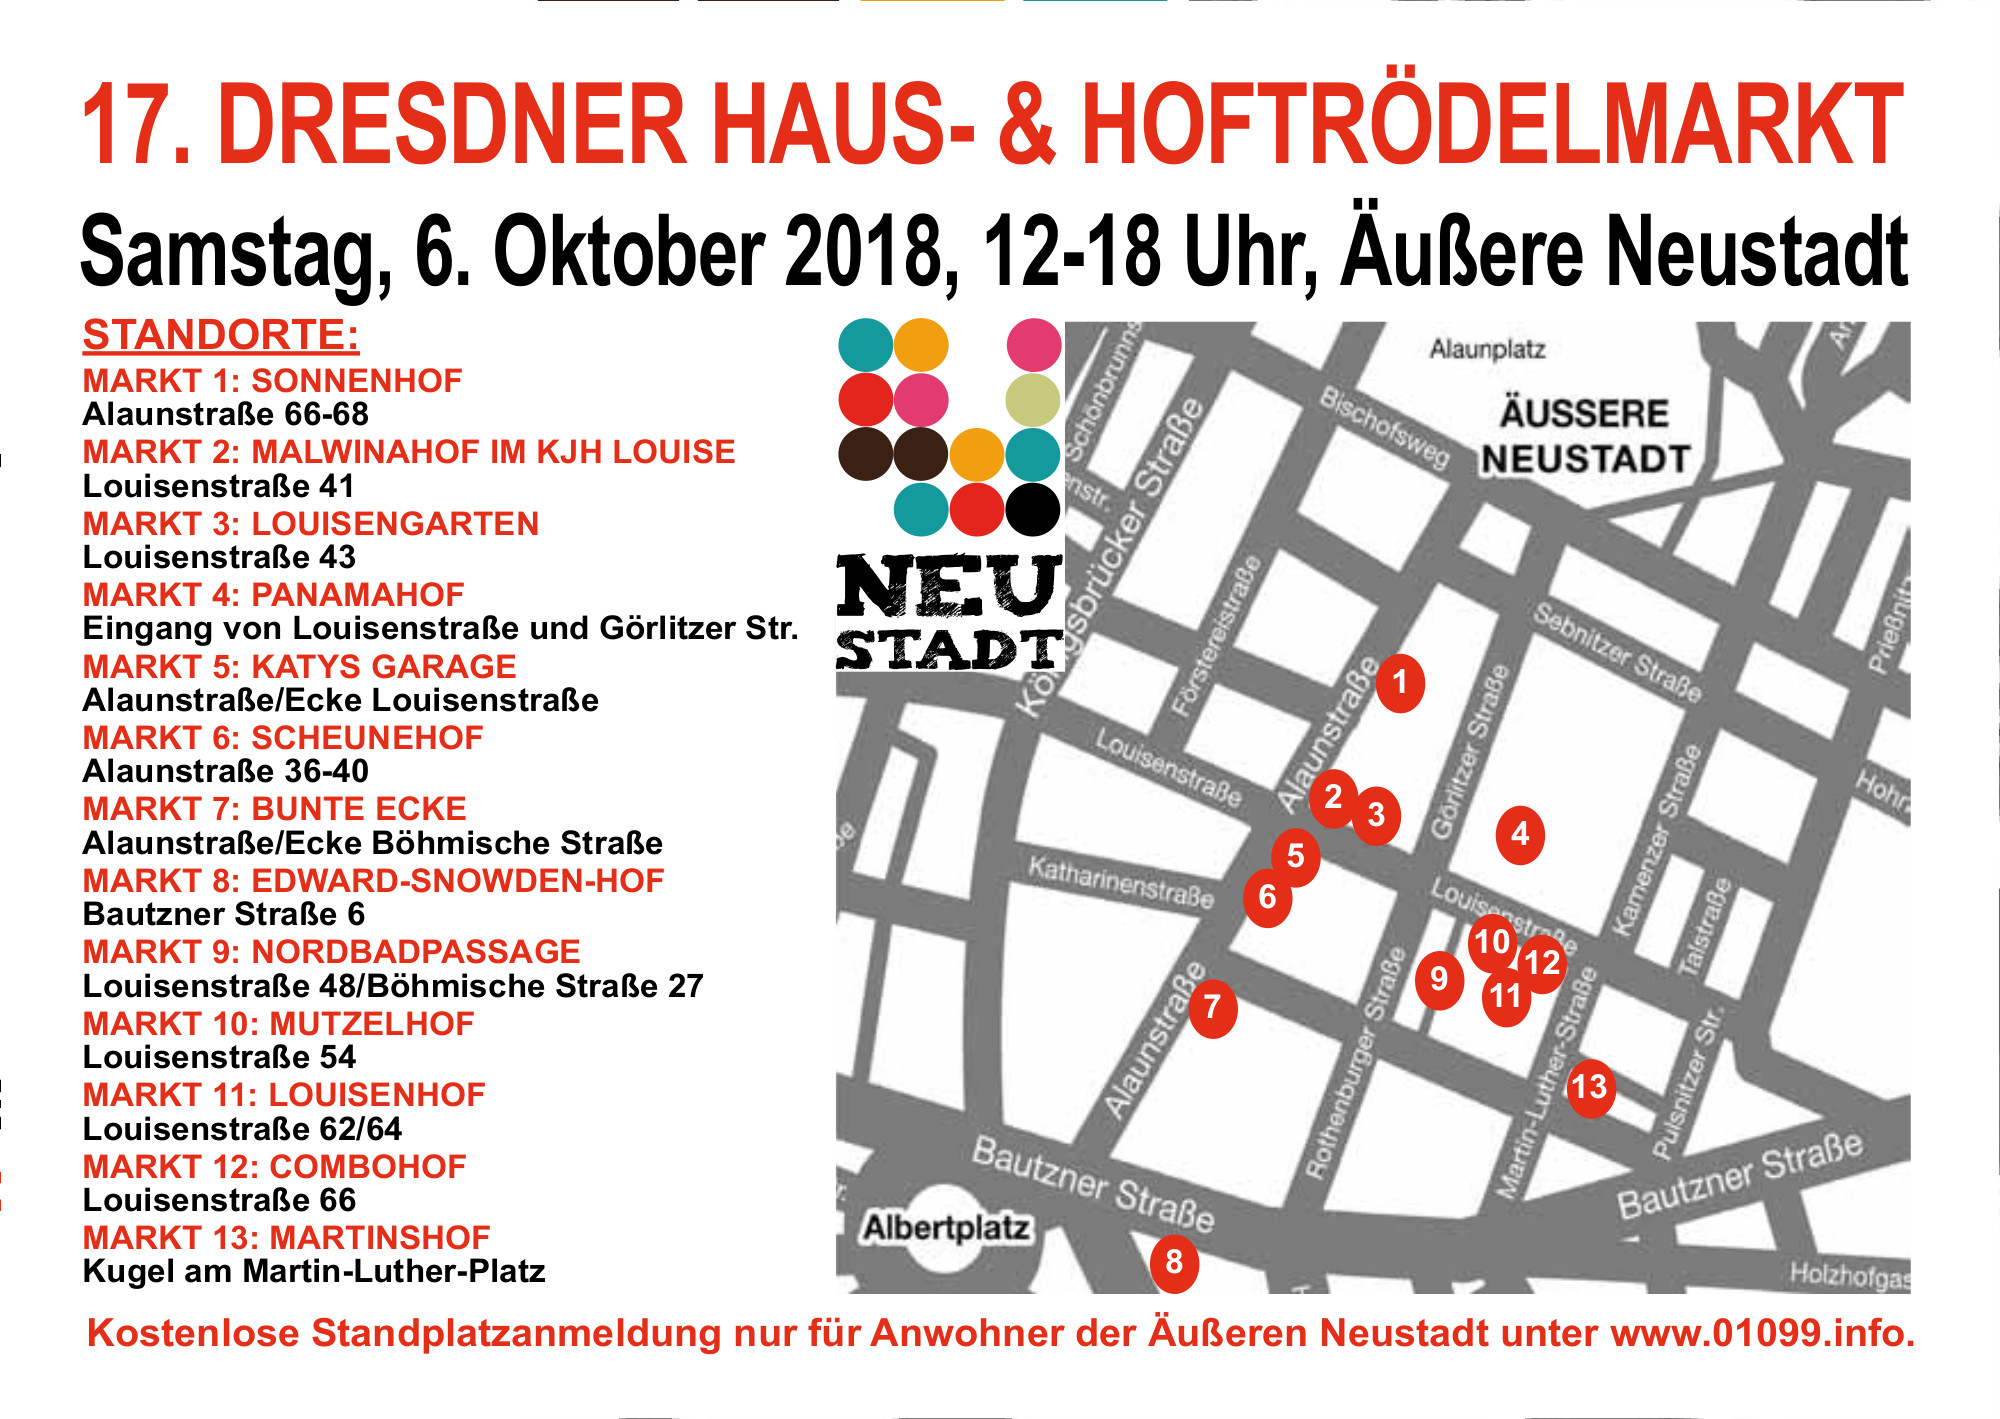 Haus- und Hof-Trödelmärkte am 6. Oktober